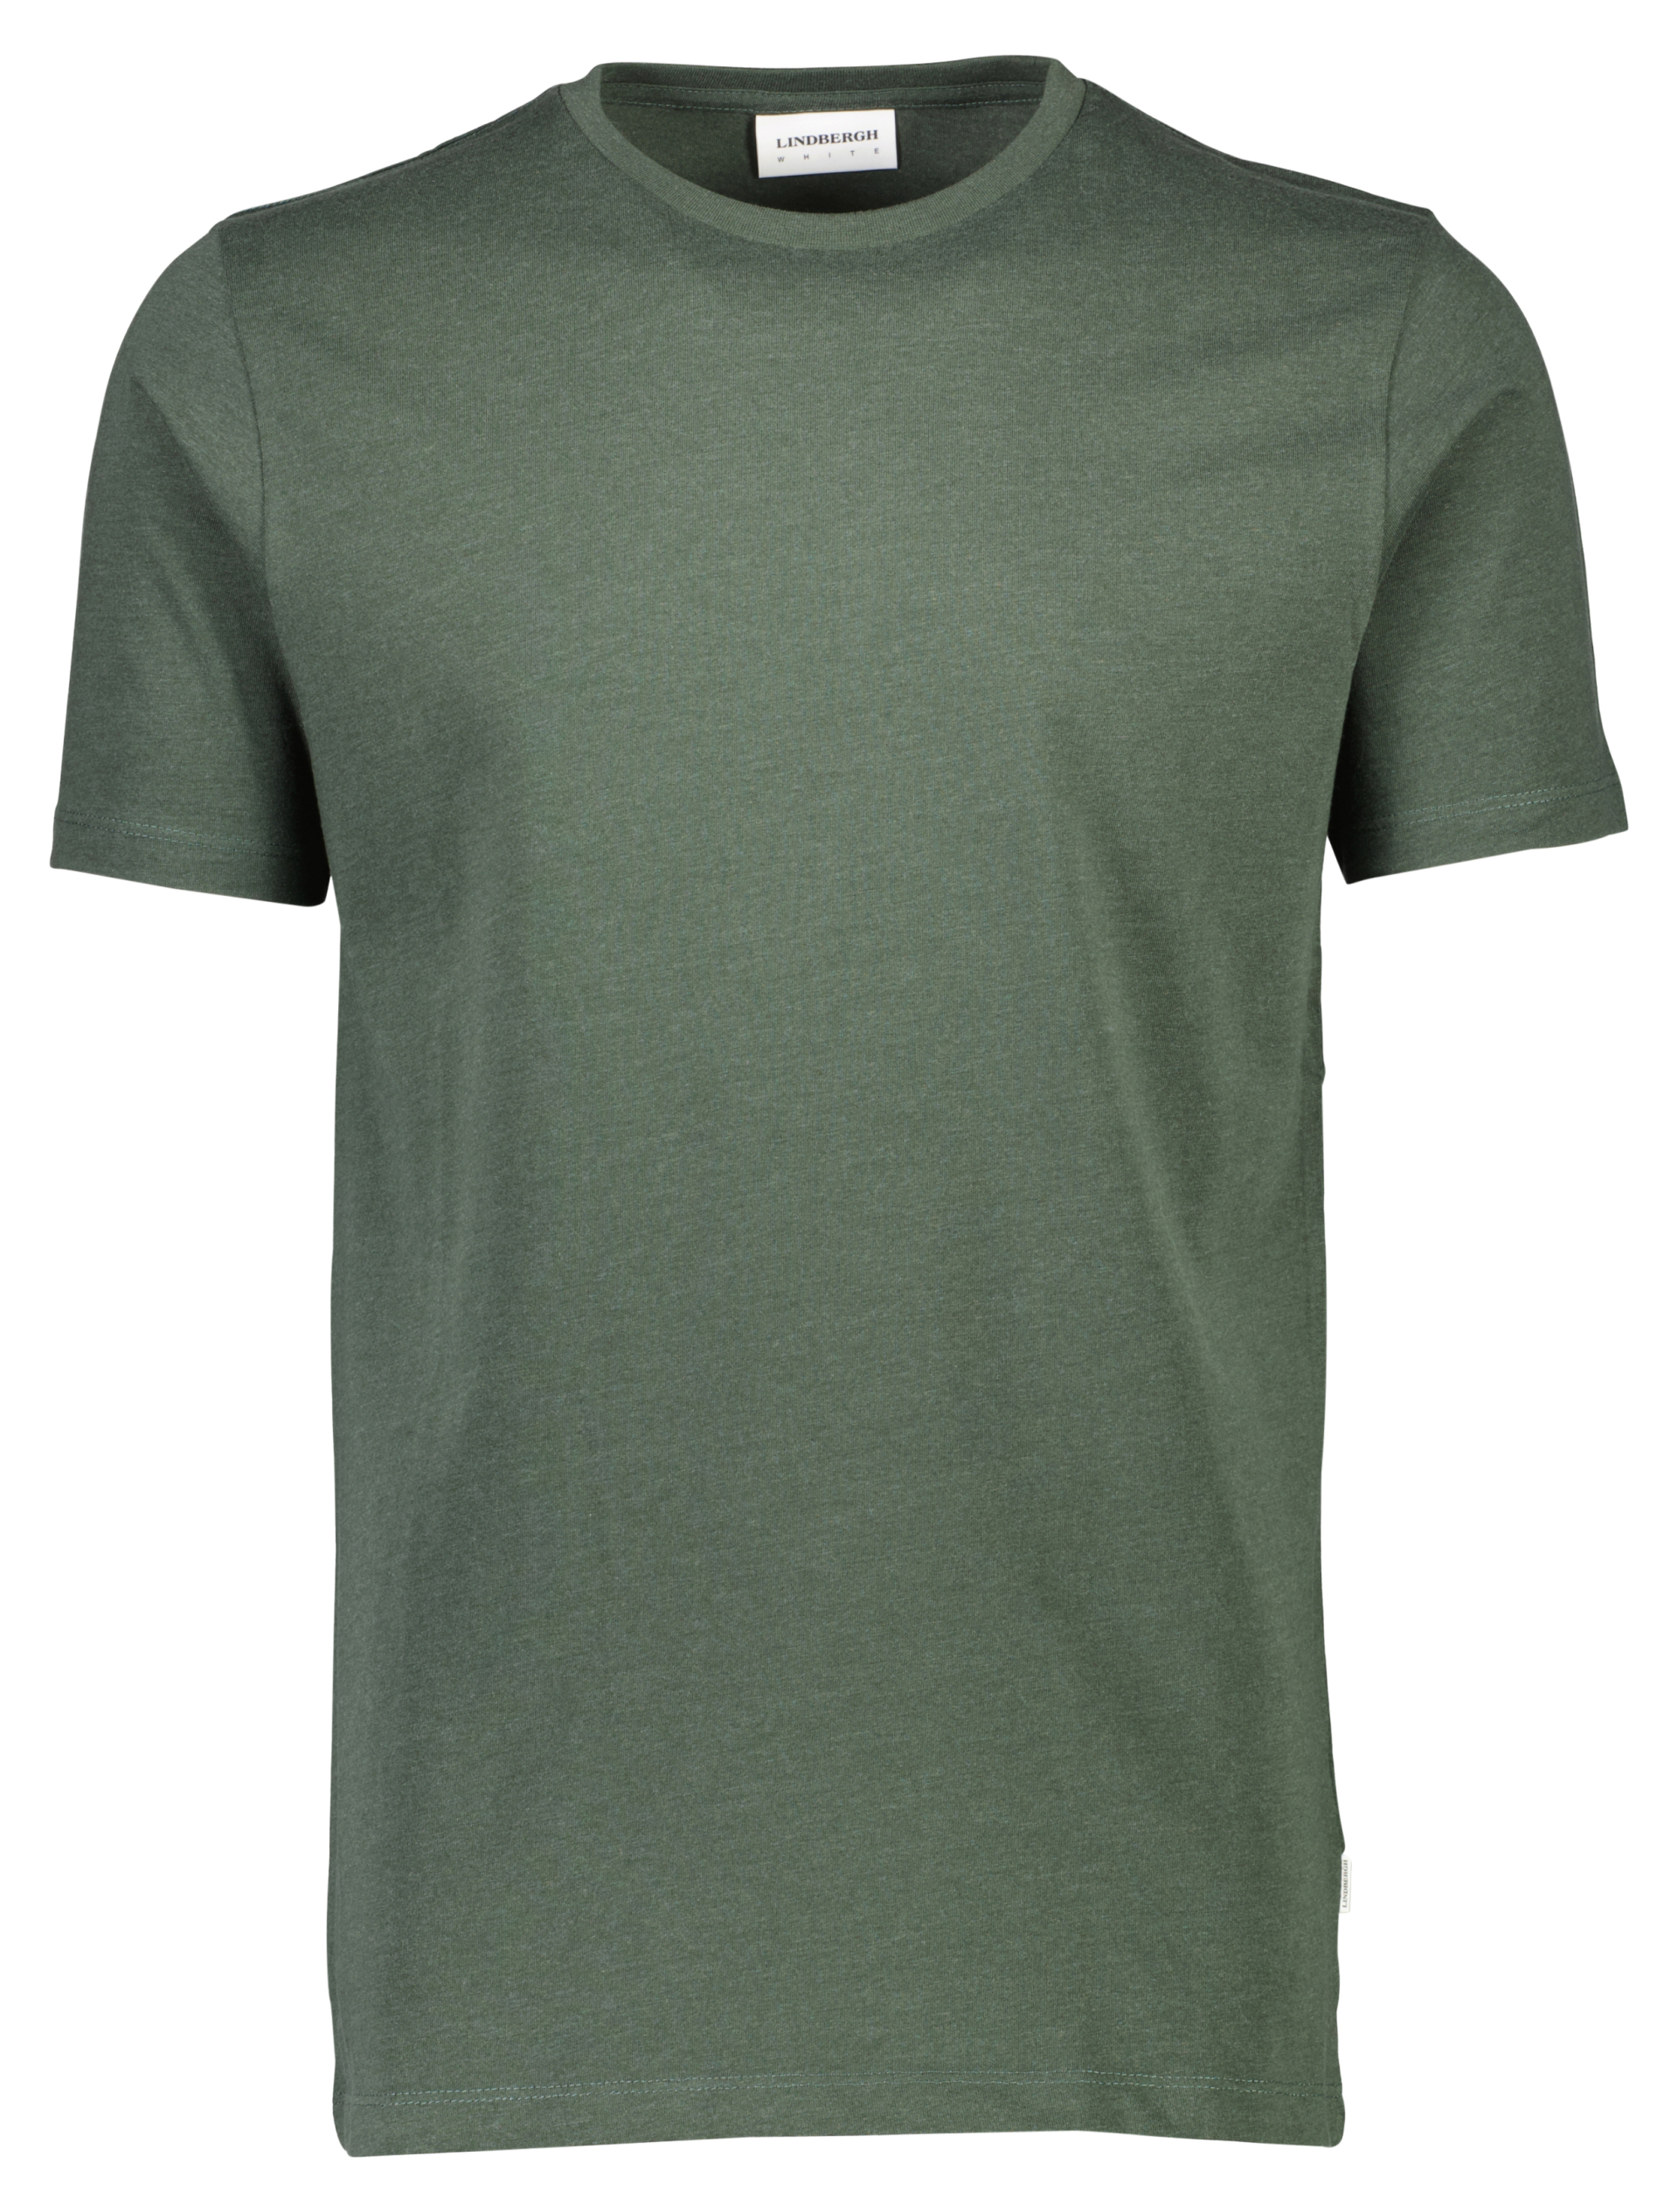 Lindbergh T-shirt grøn / green mel